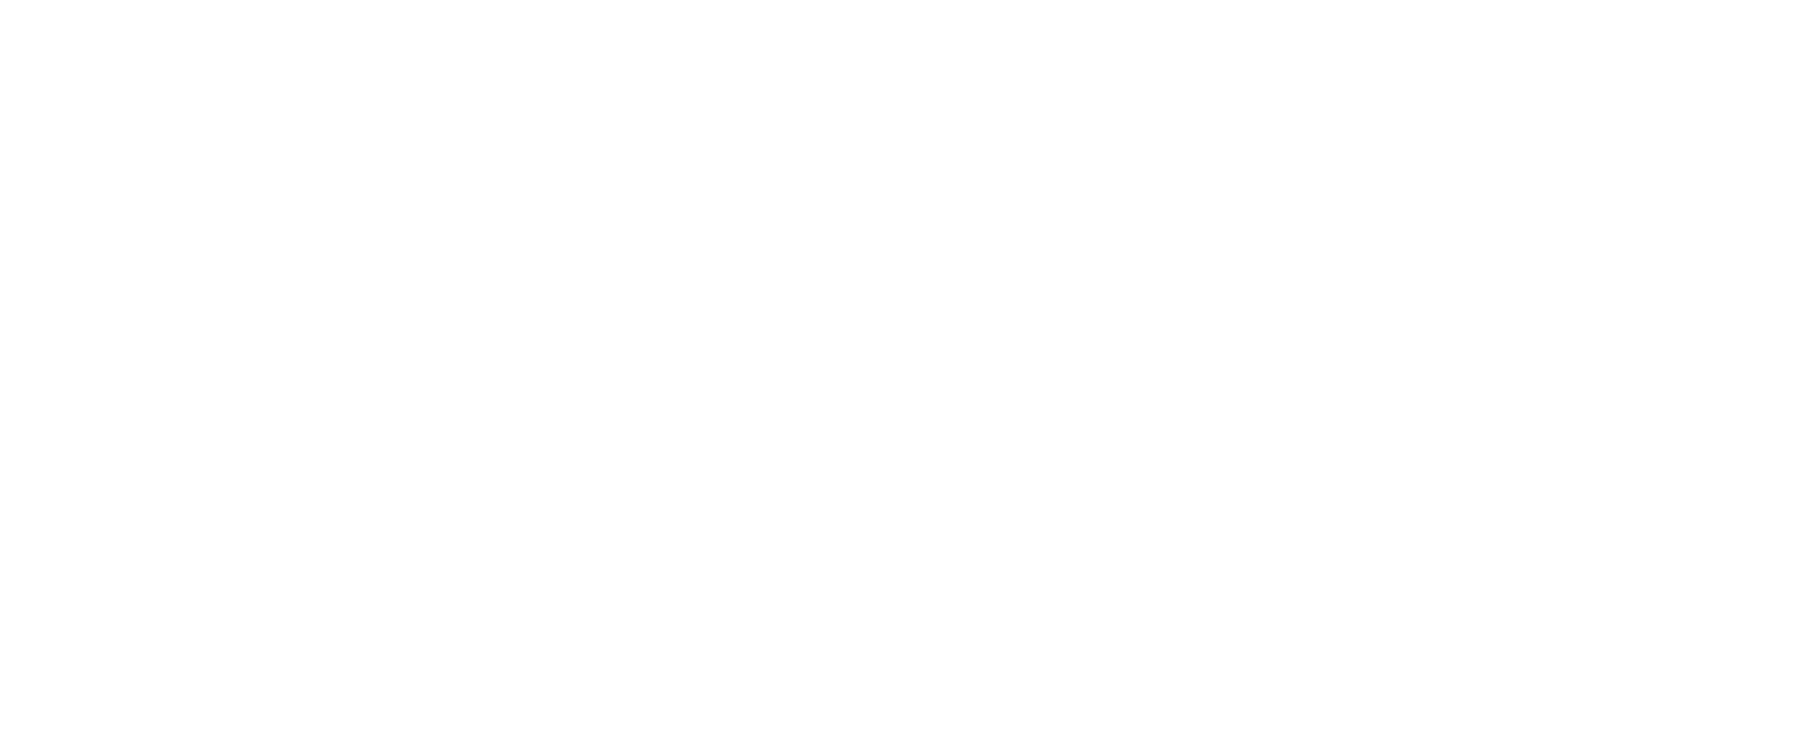 Teradata Logo - Teradata Opti Awards | Analytics Competition FAQs